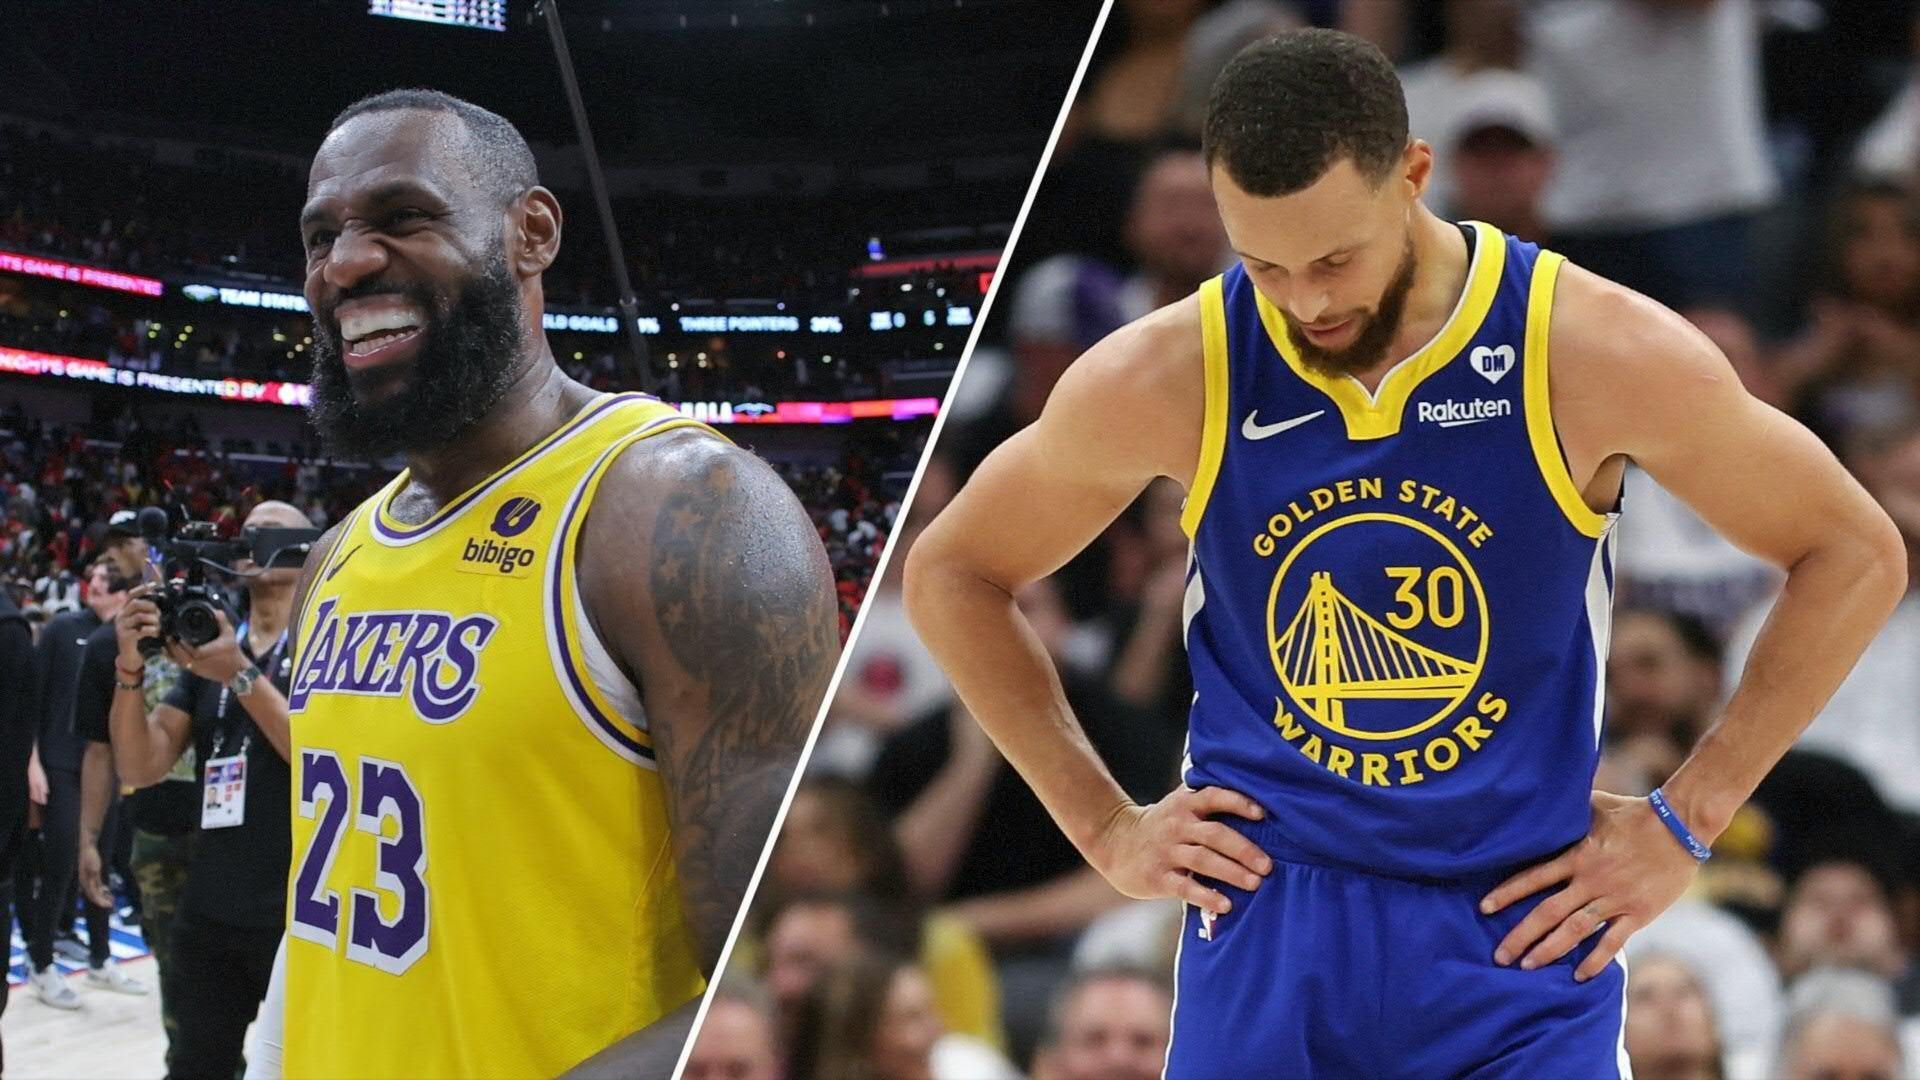 NBA: James zittert sich in die Play-offs - Curry scheitert